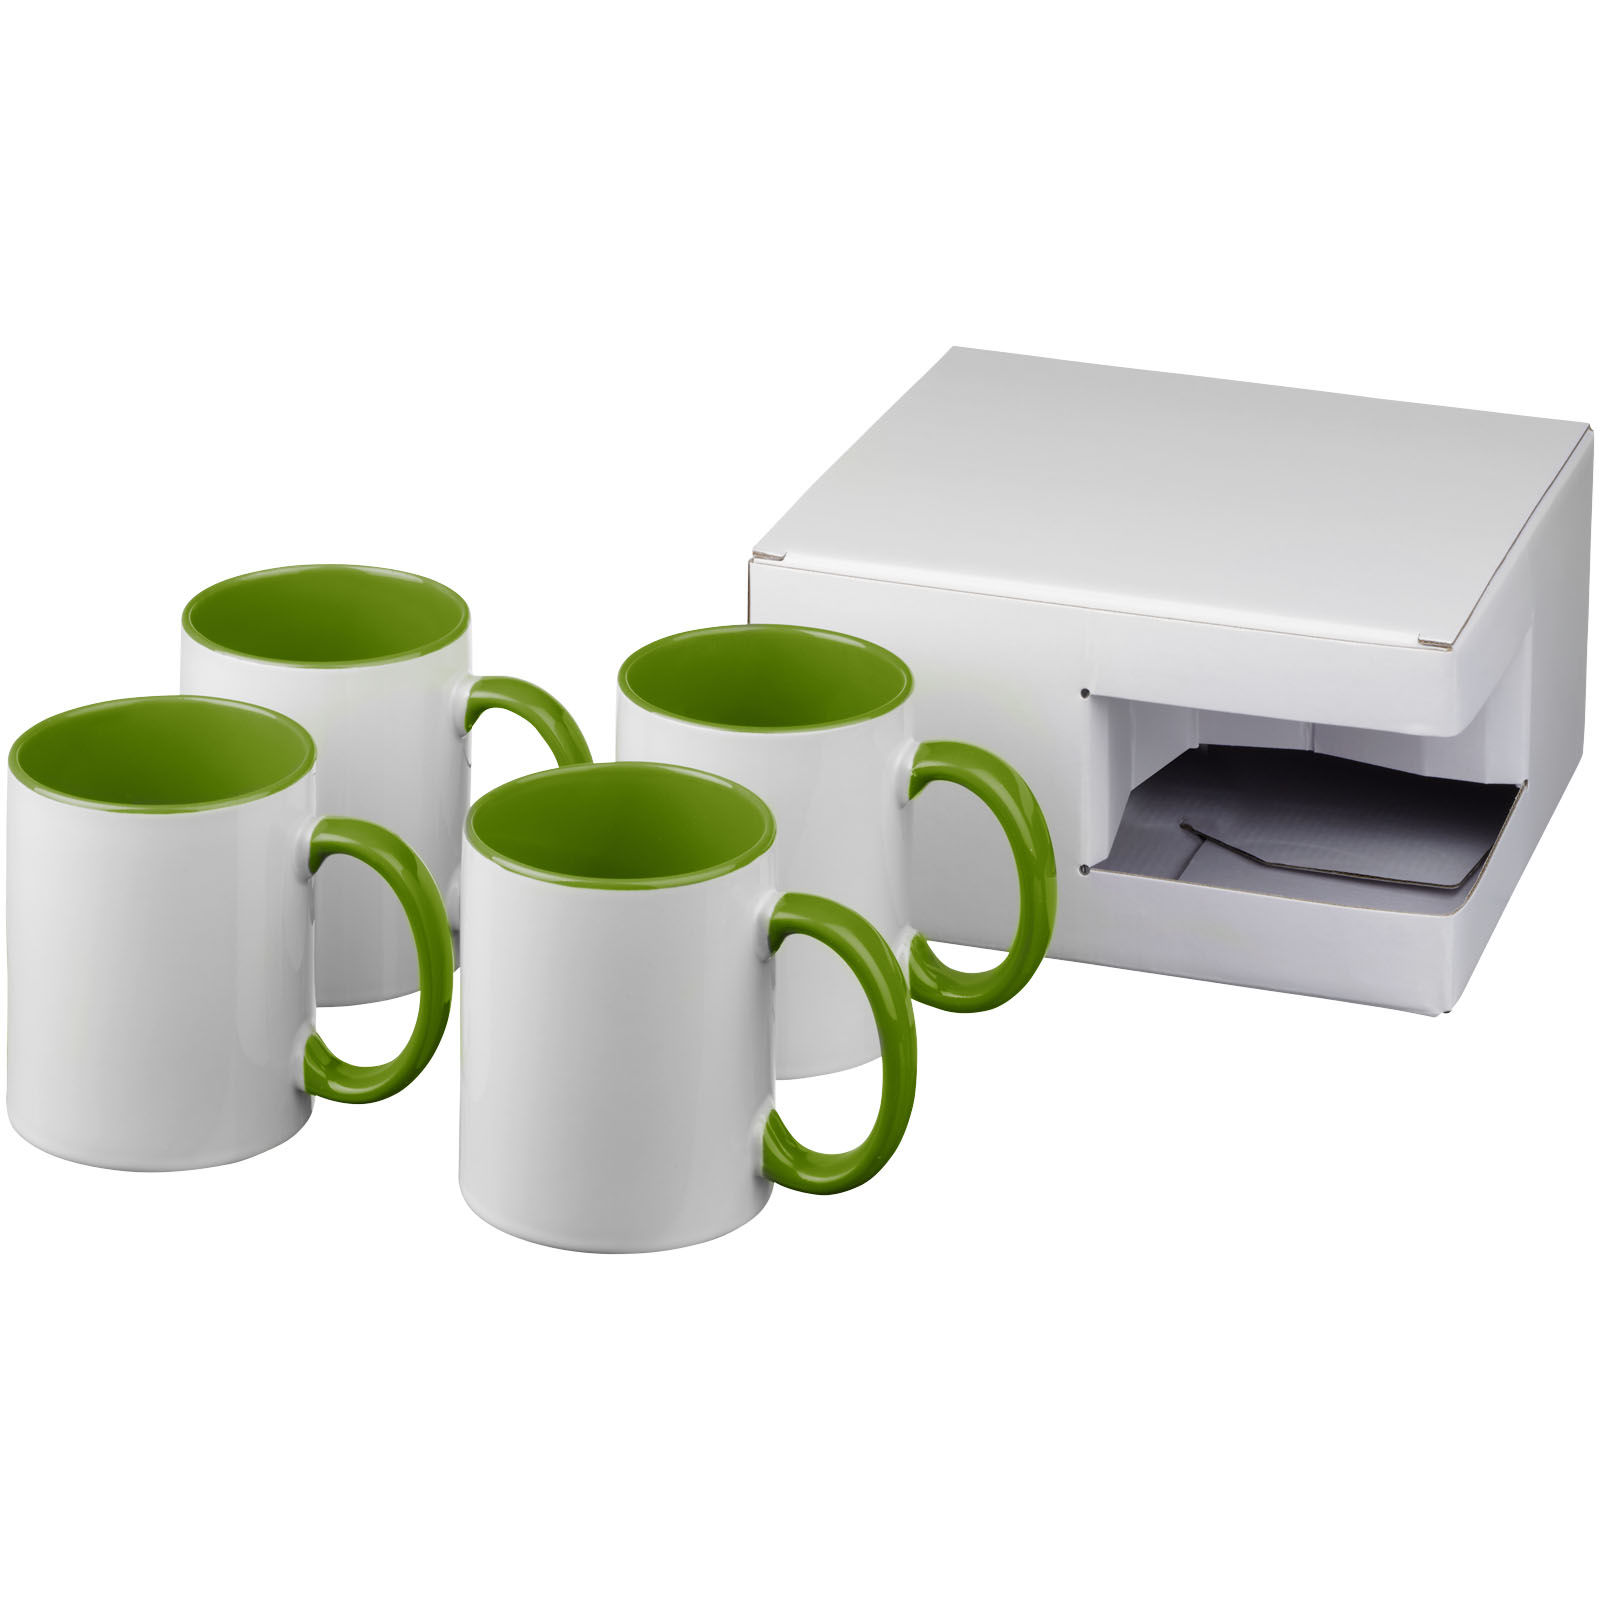 Ceramic Mug Gift Set - Brimpton - Silton